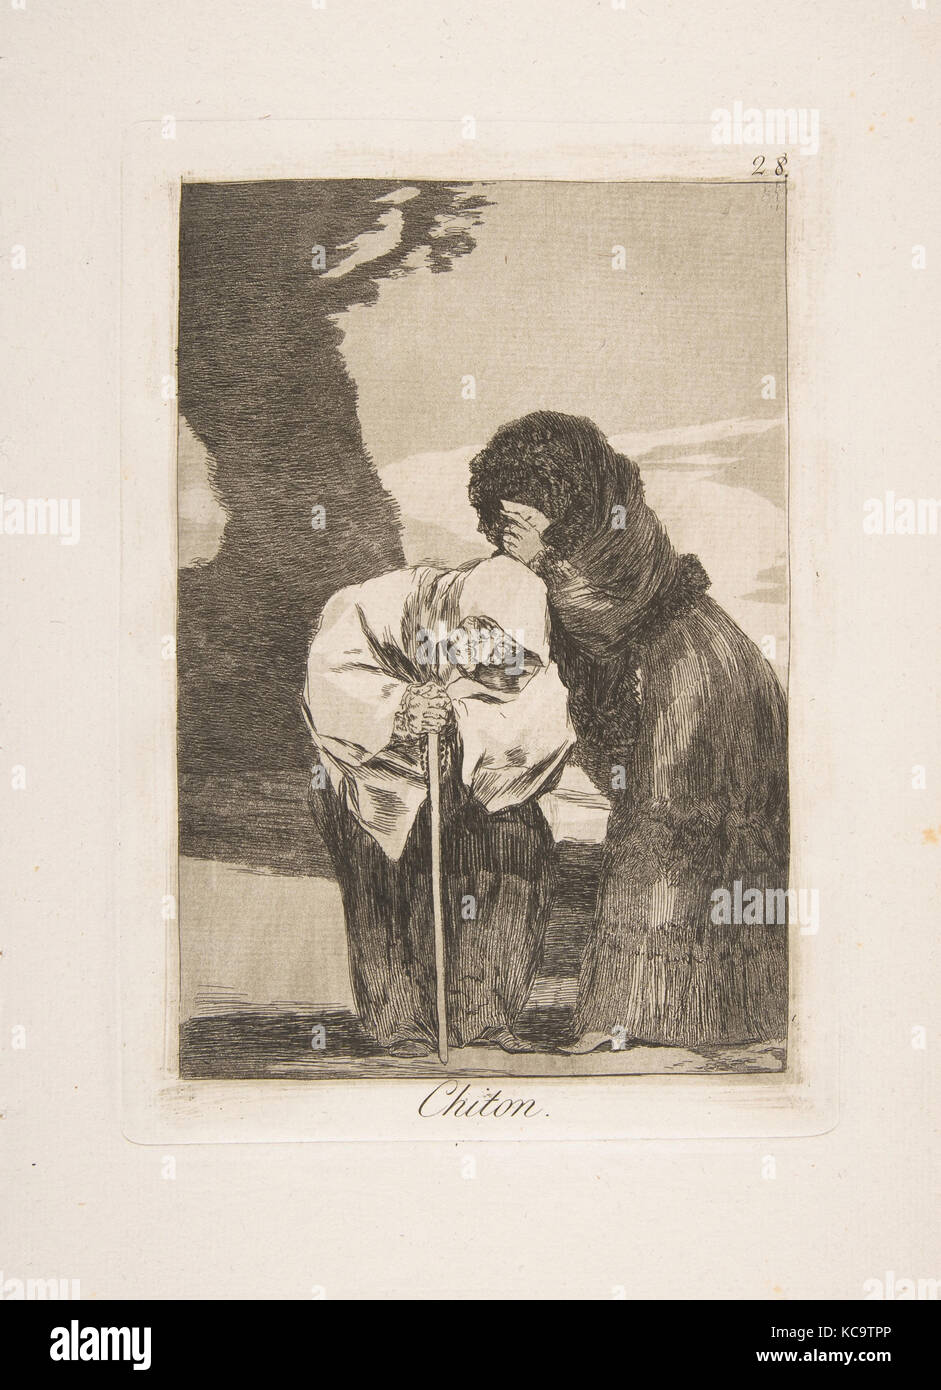 Platte 28 von 'Los Caprichos': Hush (Chiton.), Goya, 1799 Stockfoto